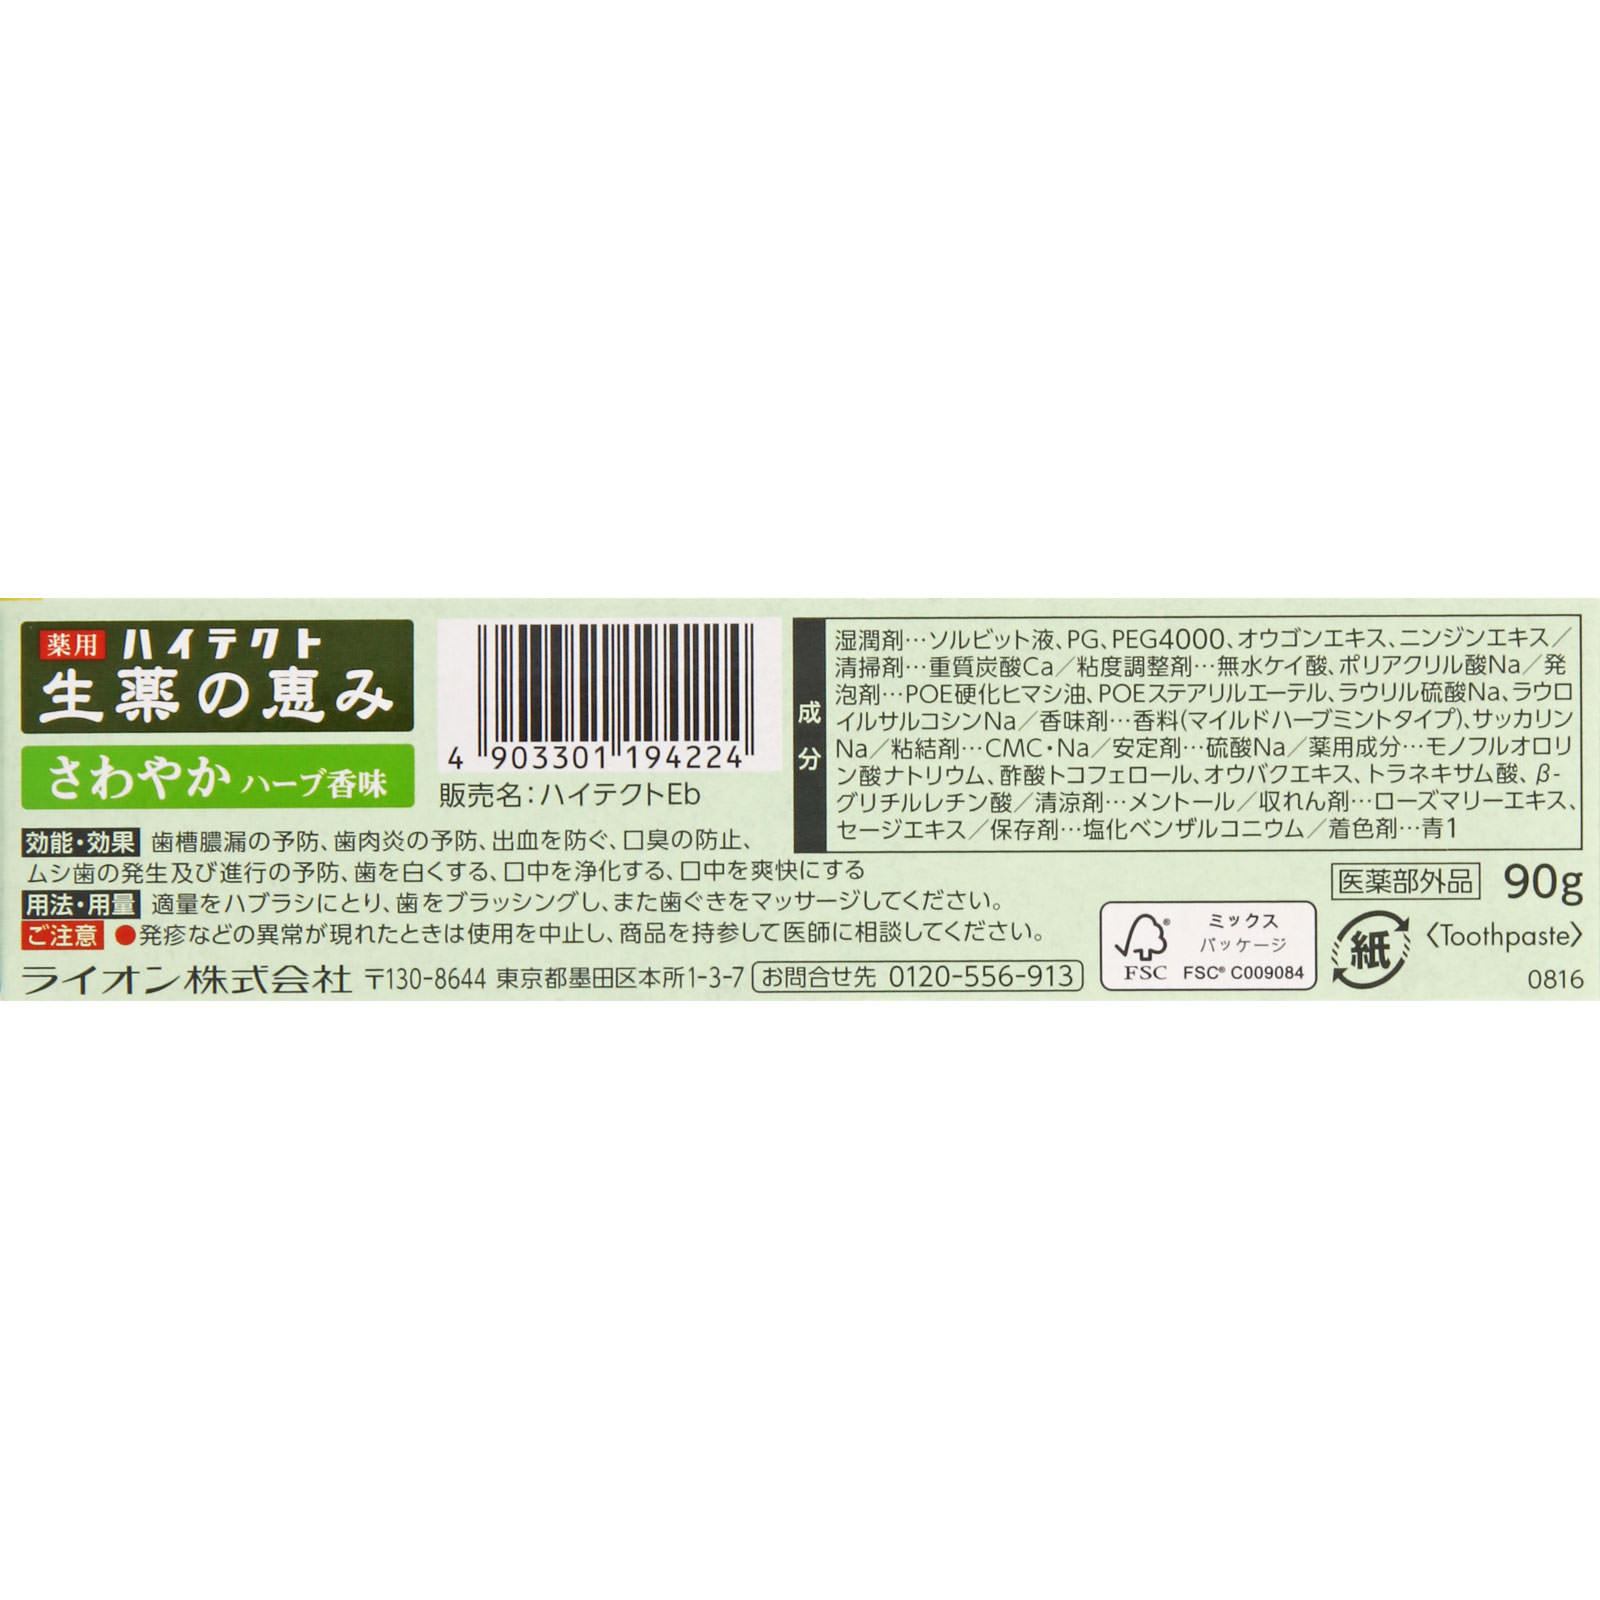 ハイテクト 生薬の恵み さわやかハーブ香味 90g 【医薬部外品】: オーラルケア Tomod's ONLINE SHOP